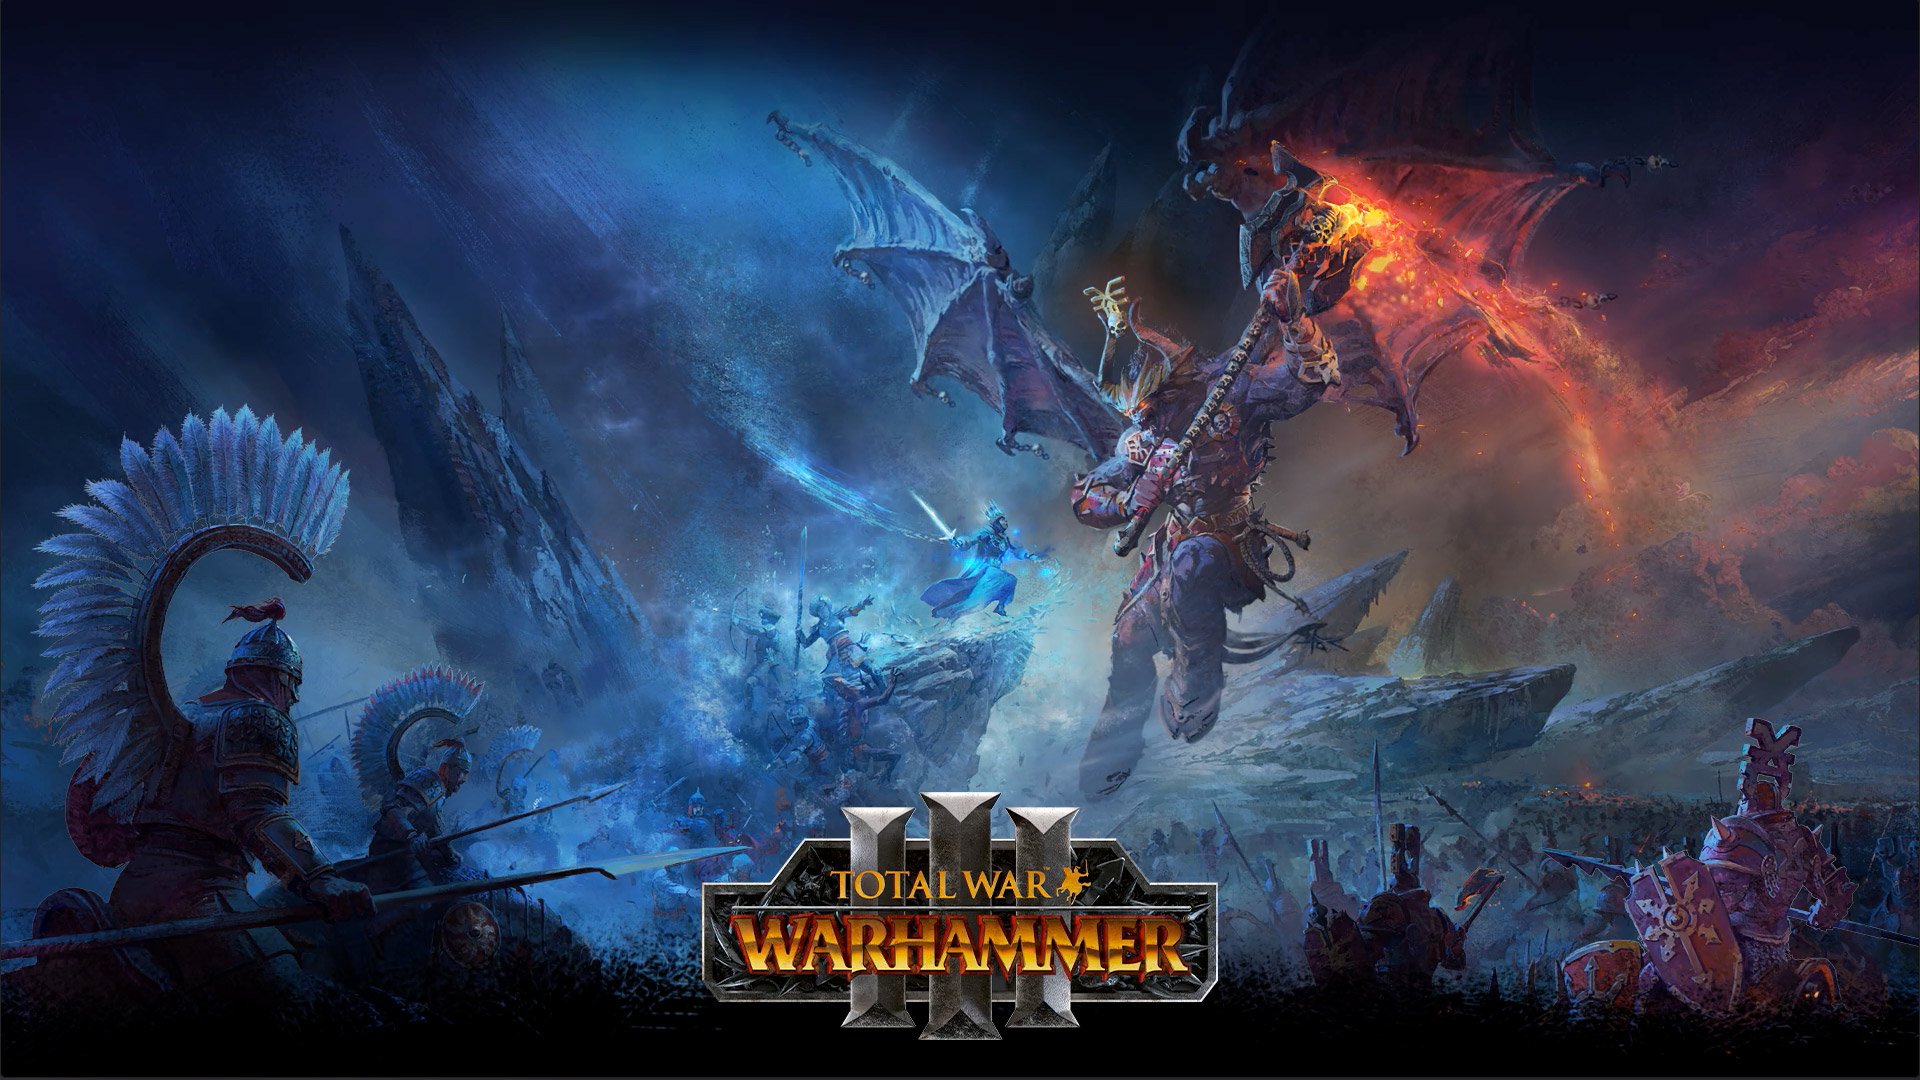 氷の魔法使いが戦場で巨大なドラゴンのディーモンと対決する Total War Warhammer 3 